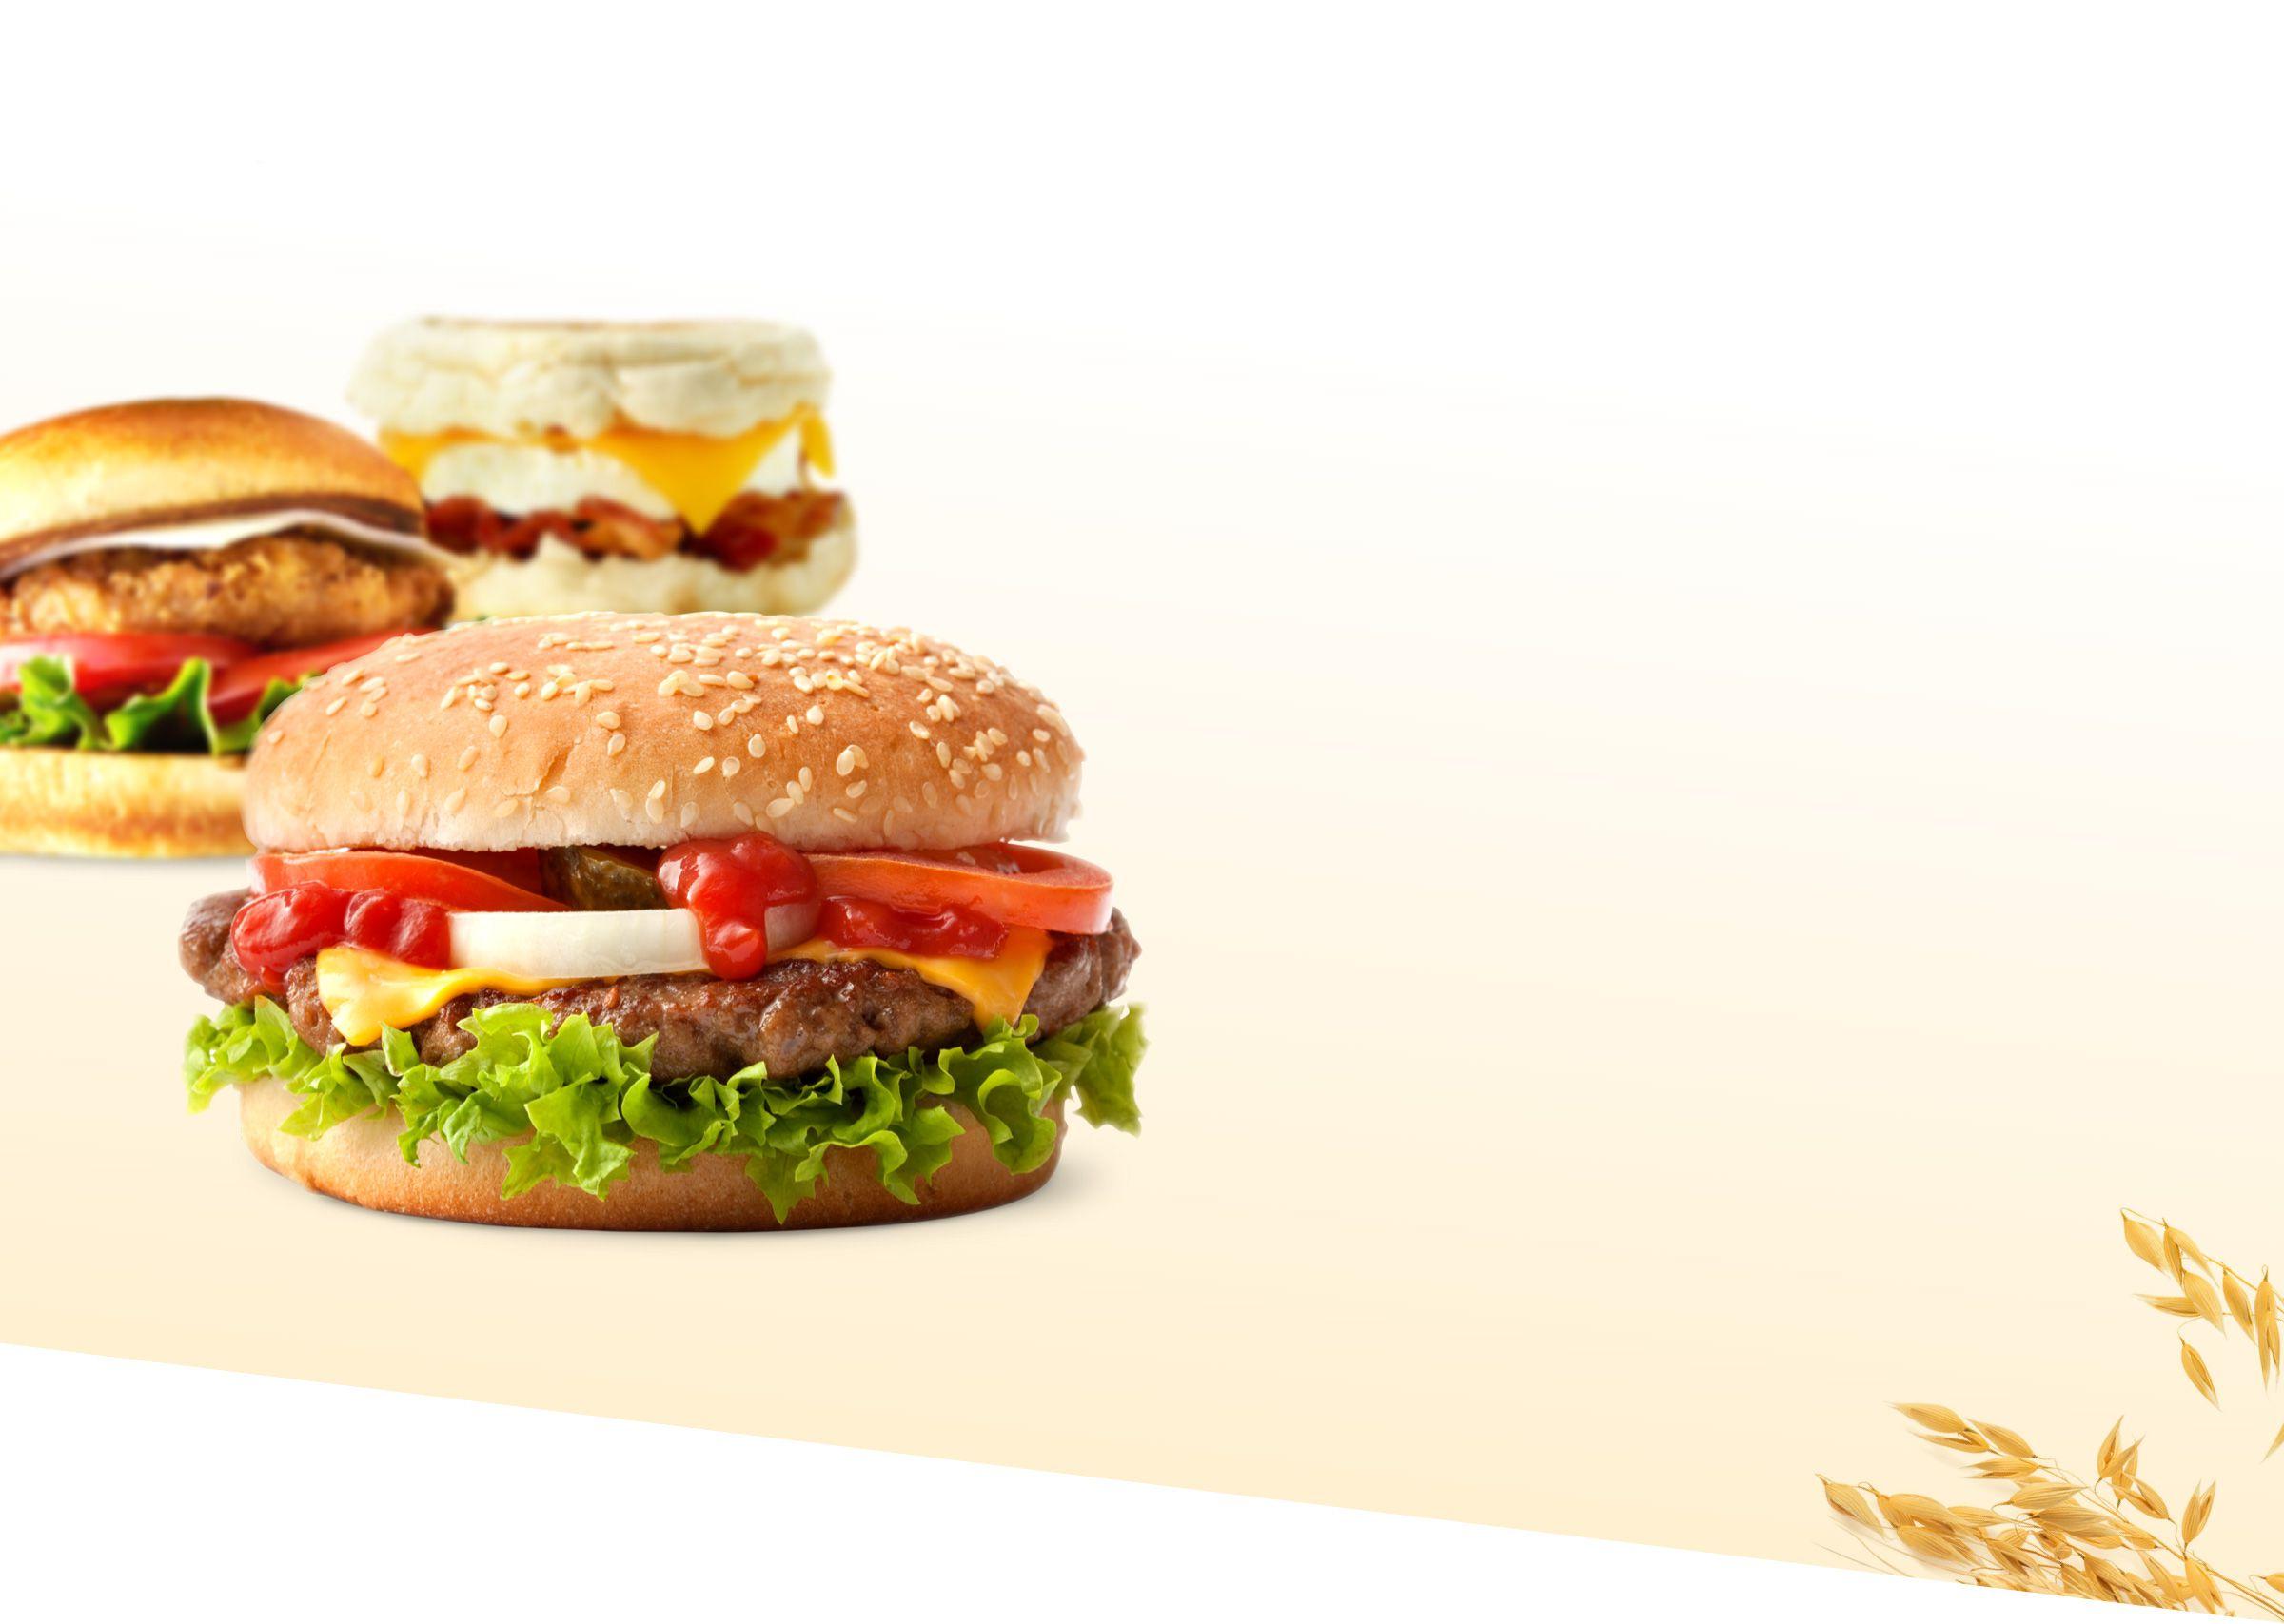 芝士汉堡加芝麻面包, 鸡肉三明治, 早餐三明治加英式松饼, 东北食品供应, 美国最大的面包供应商之一, 卷, 面包制品.